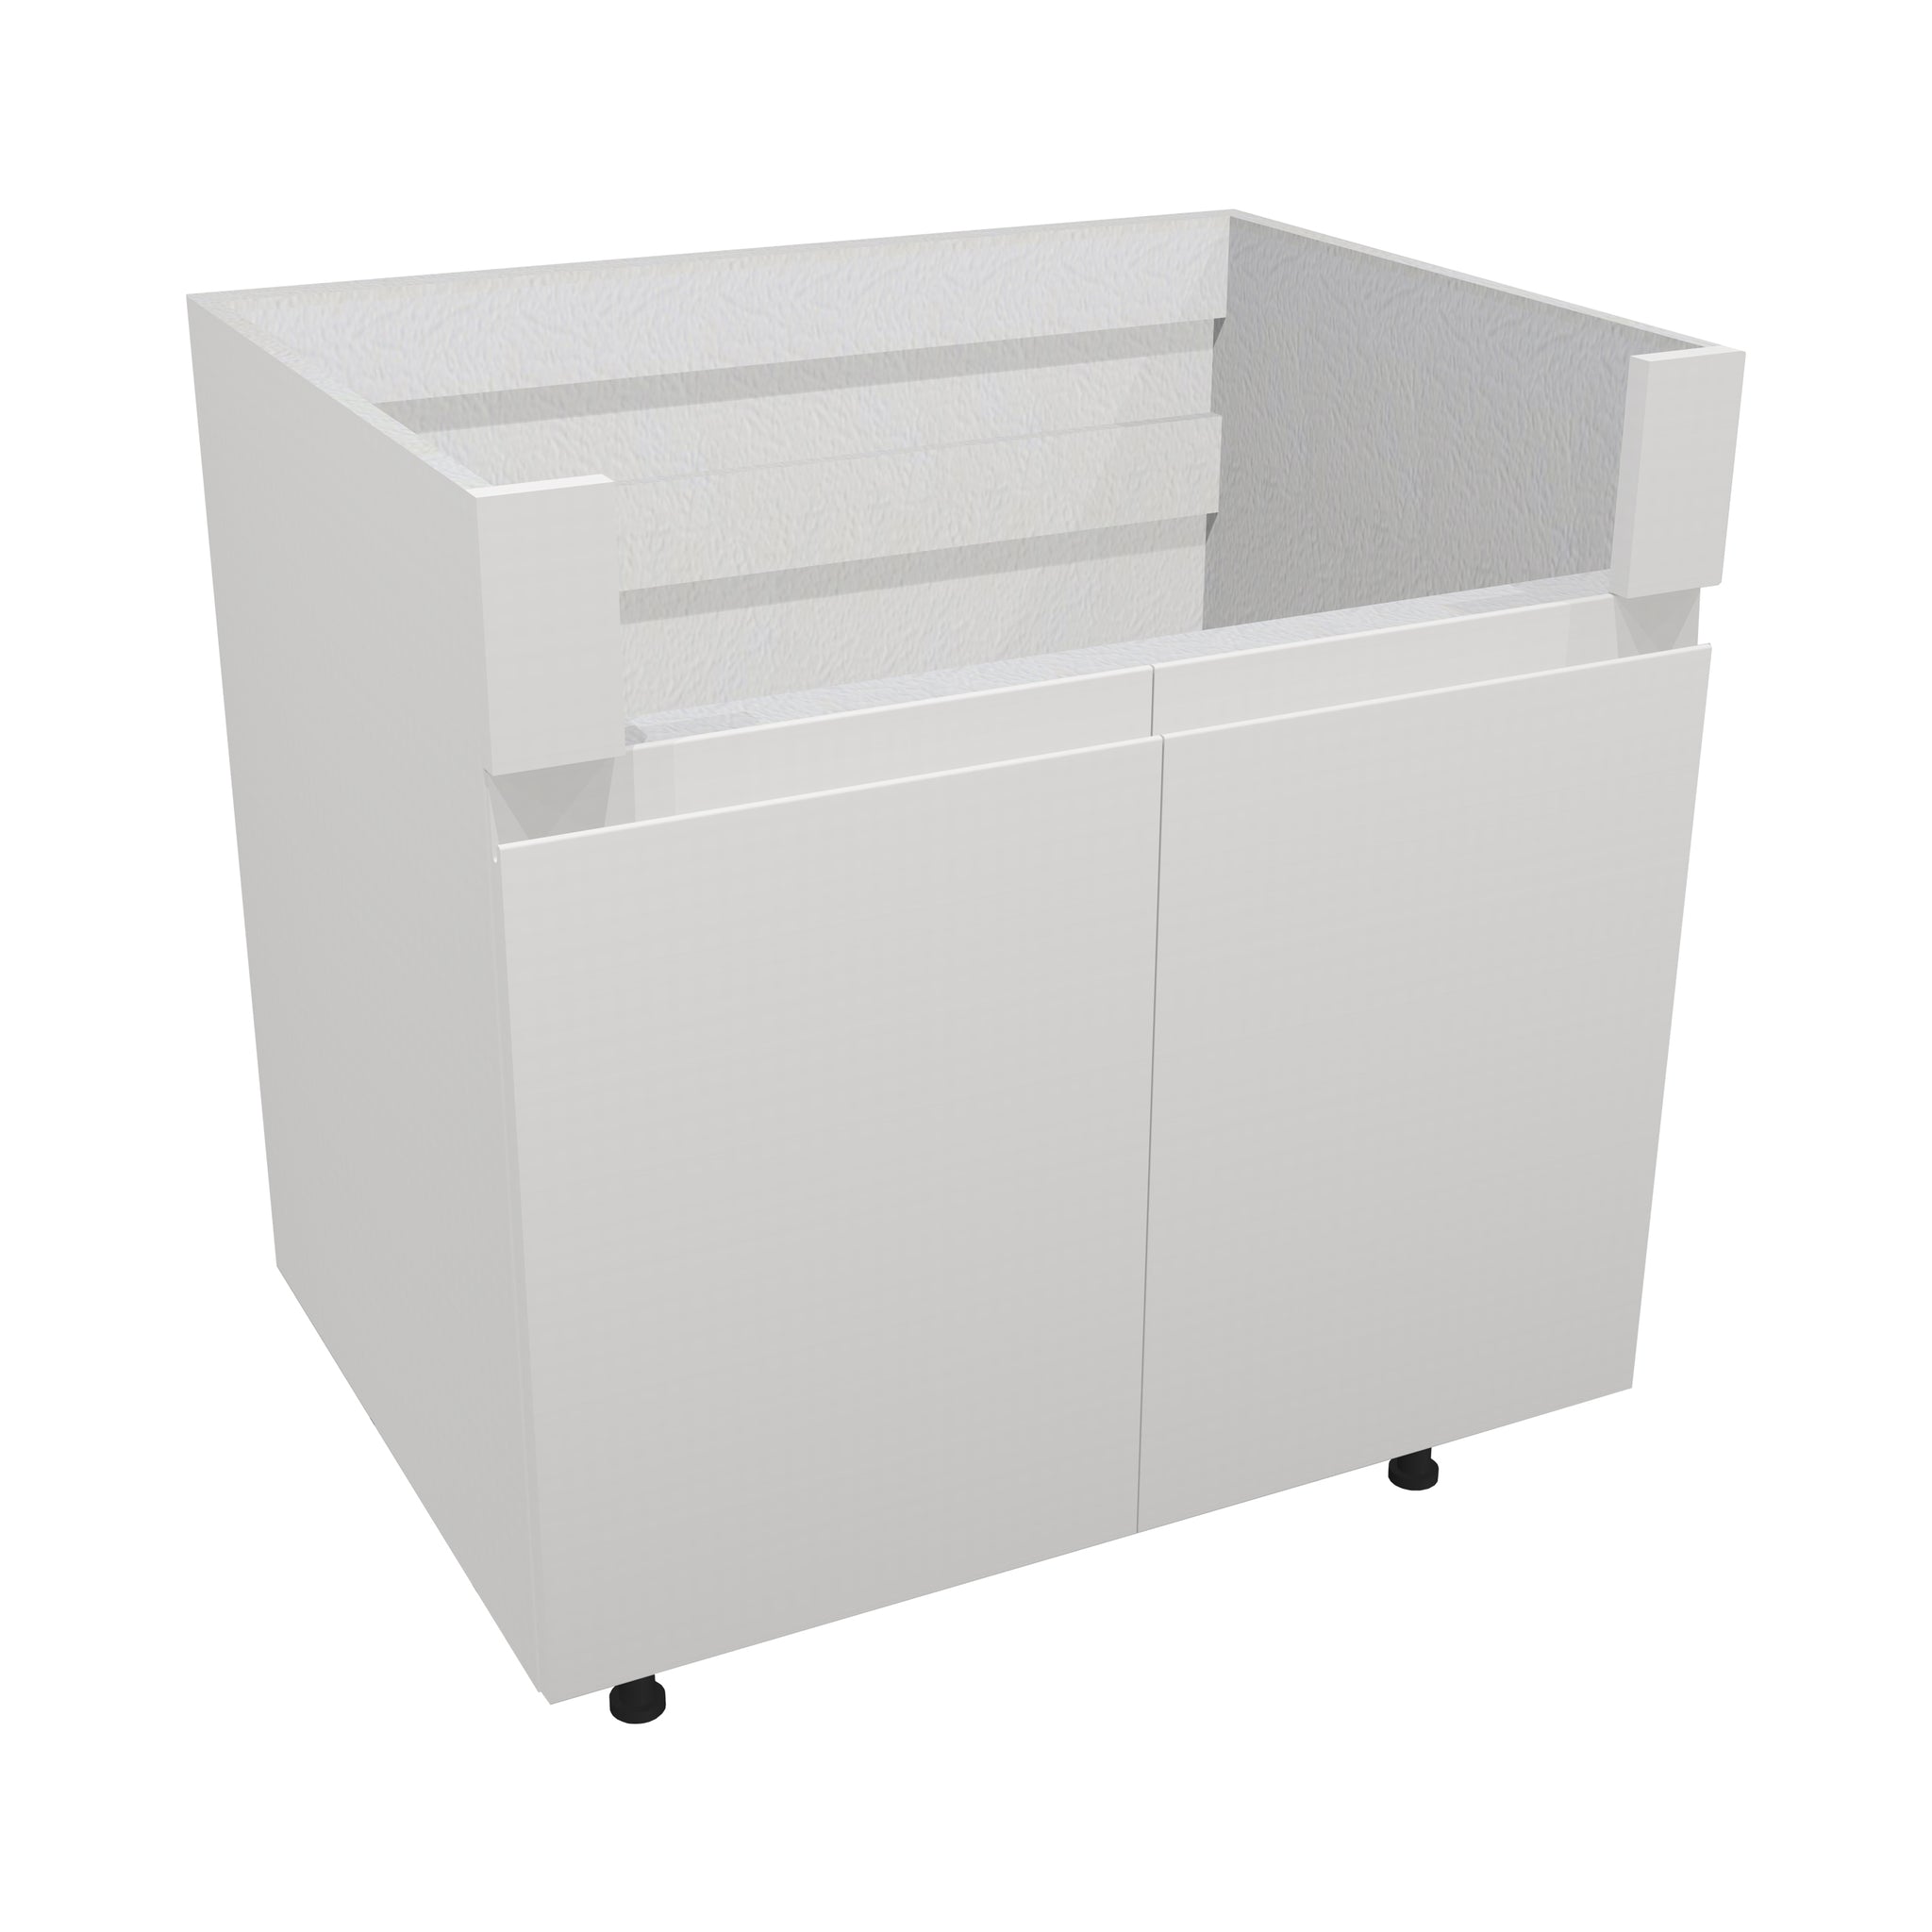 RTA - Lacquer White - Apron Sink Base Cabinet | 33"W x 30"H x 23.8"D